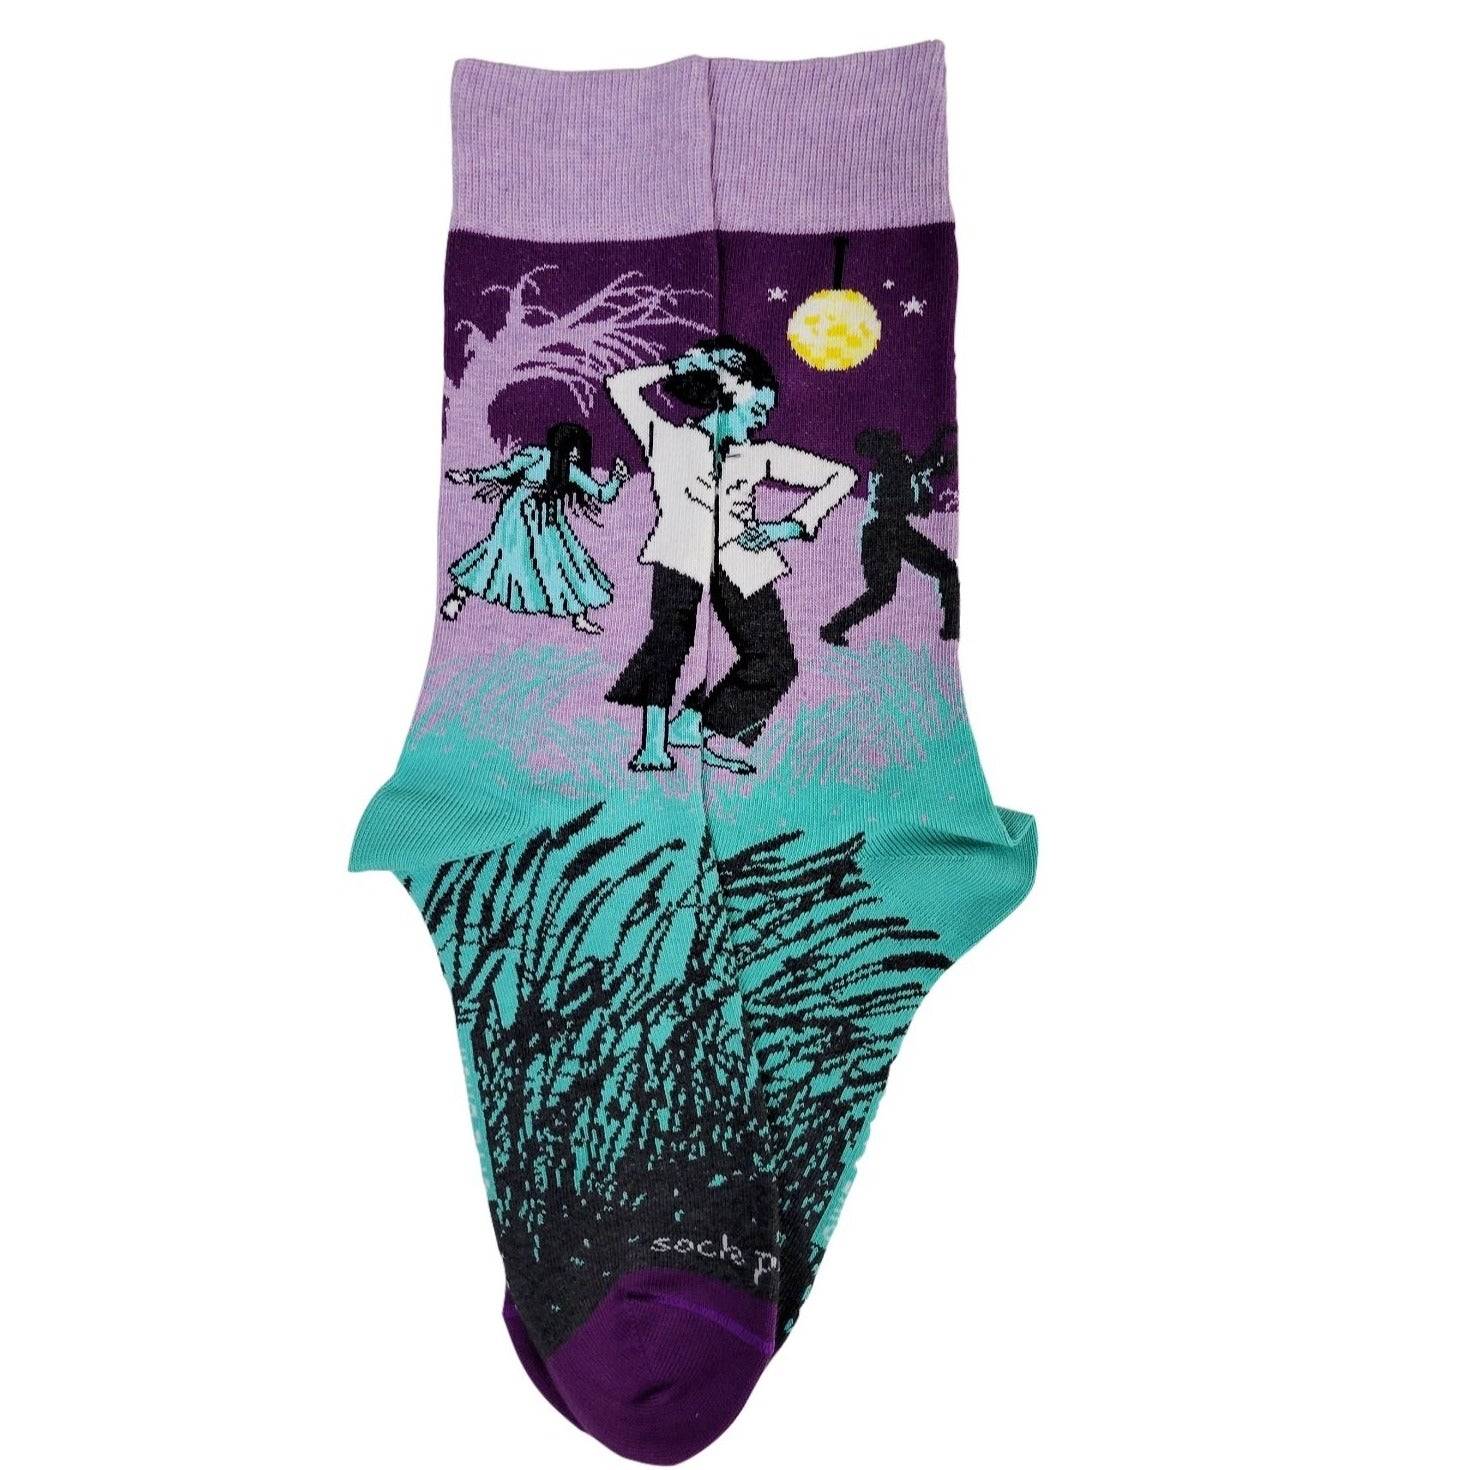 Dancing Ghouls and Monsters Socks from the Sock Panda (Adult Medium)